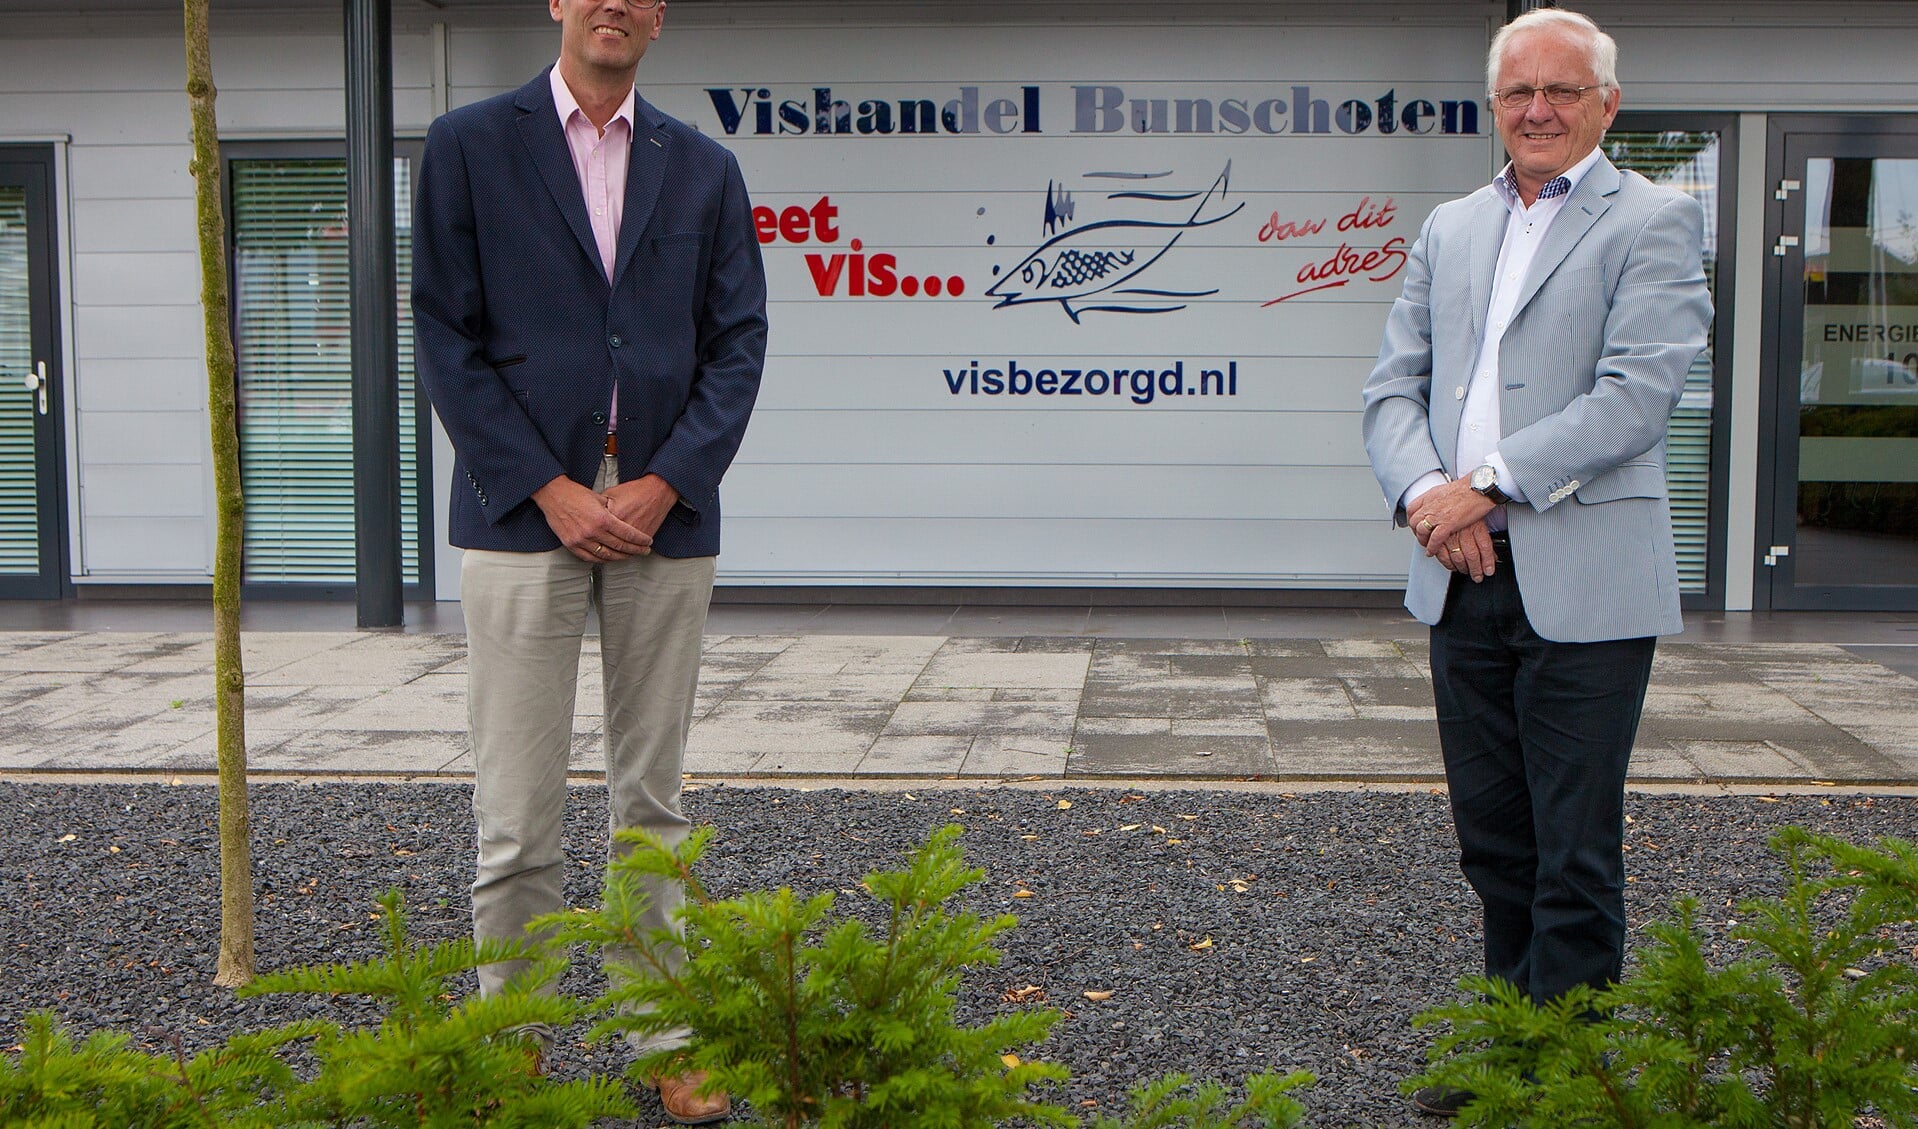 Rechts Jan Kroon, samen met René Schiltkamp voor Vishandel Bunschoten, waar zij hopen een vispaviljoen te kunnen starten.